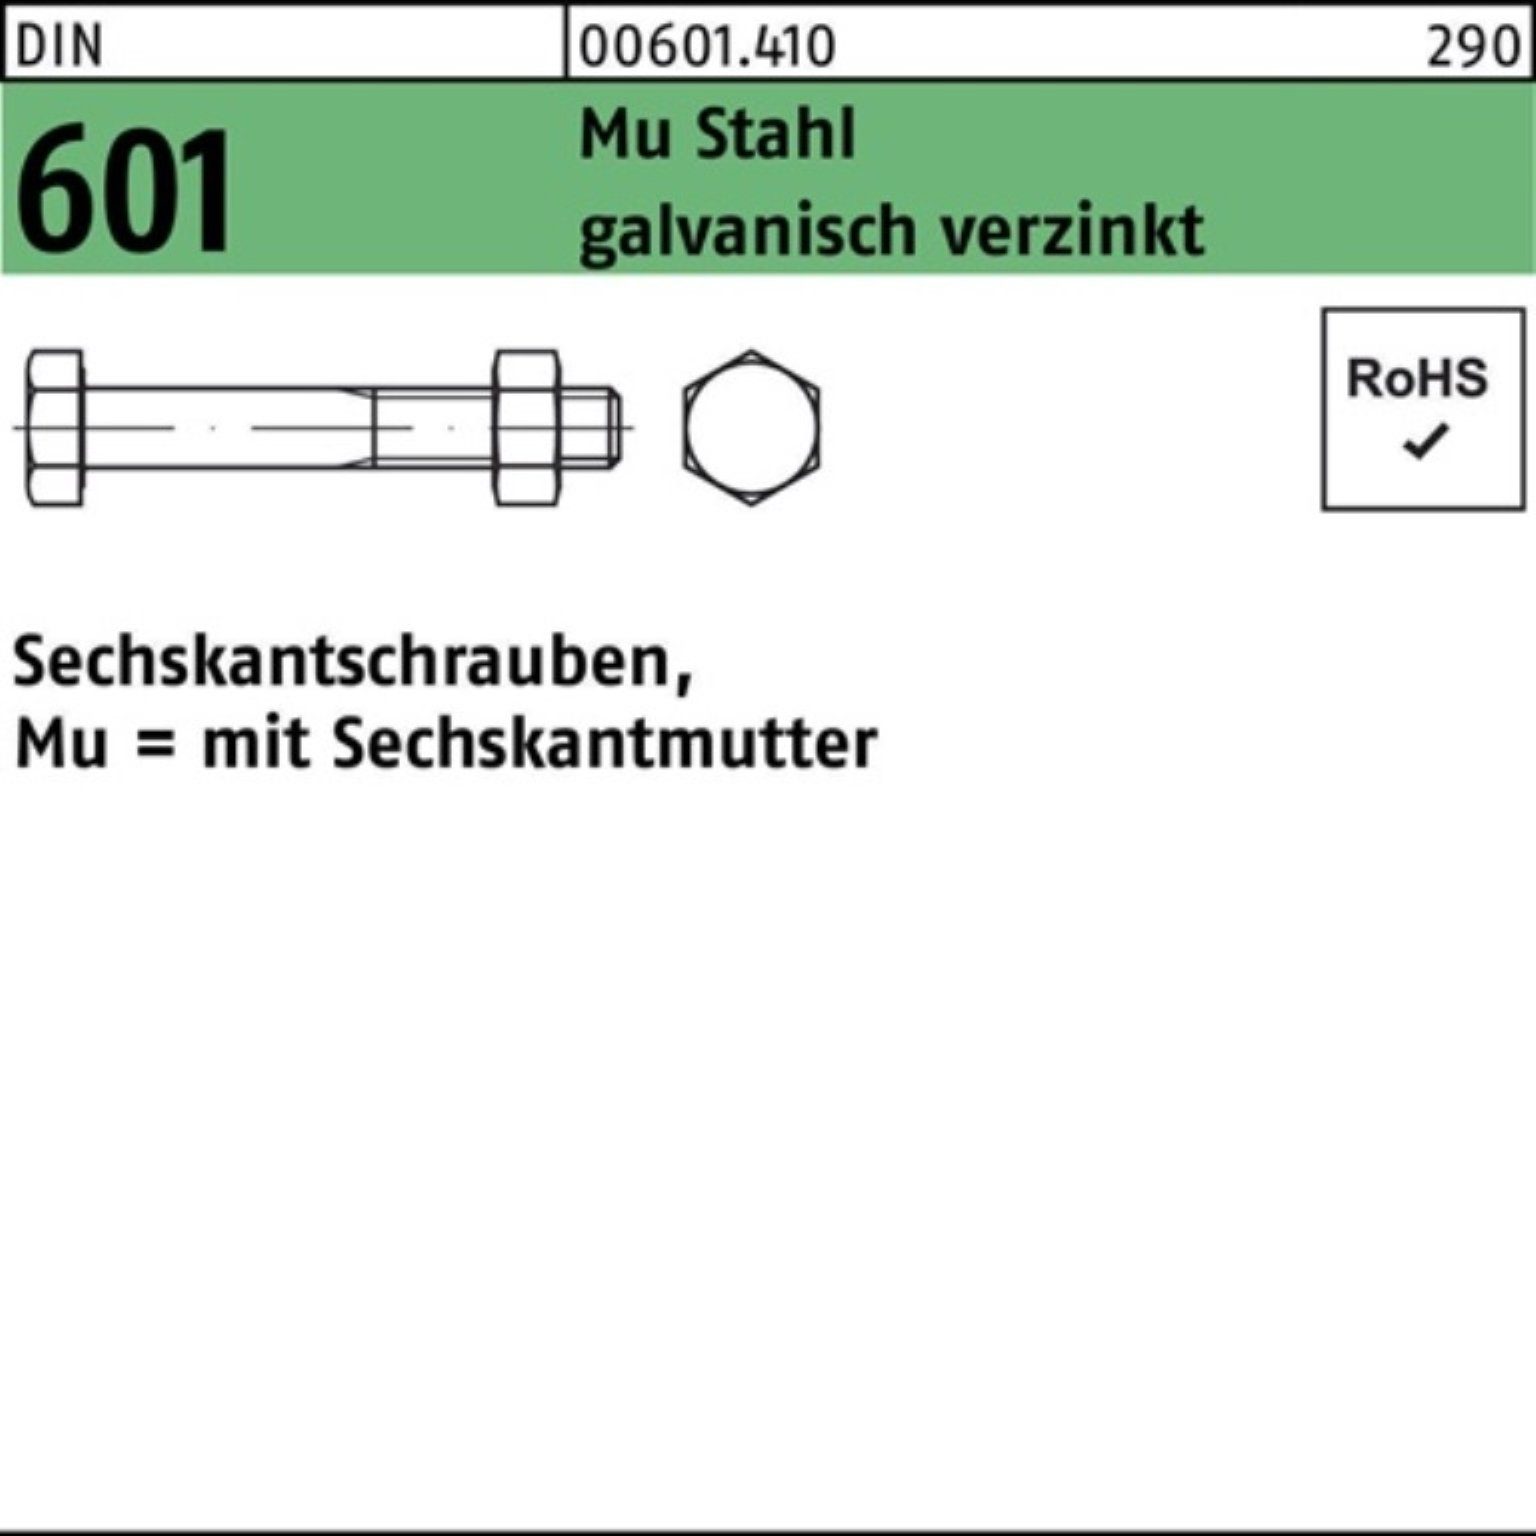 Reyher Sechskantmutter 200er Pack Sechskantschraube DIN 601 Sechskantmutter M6x45 Mu Stahl 4.